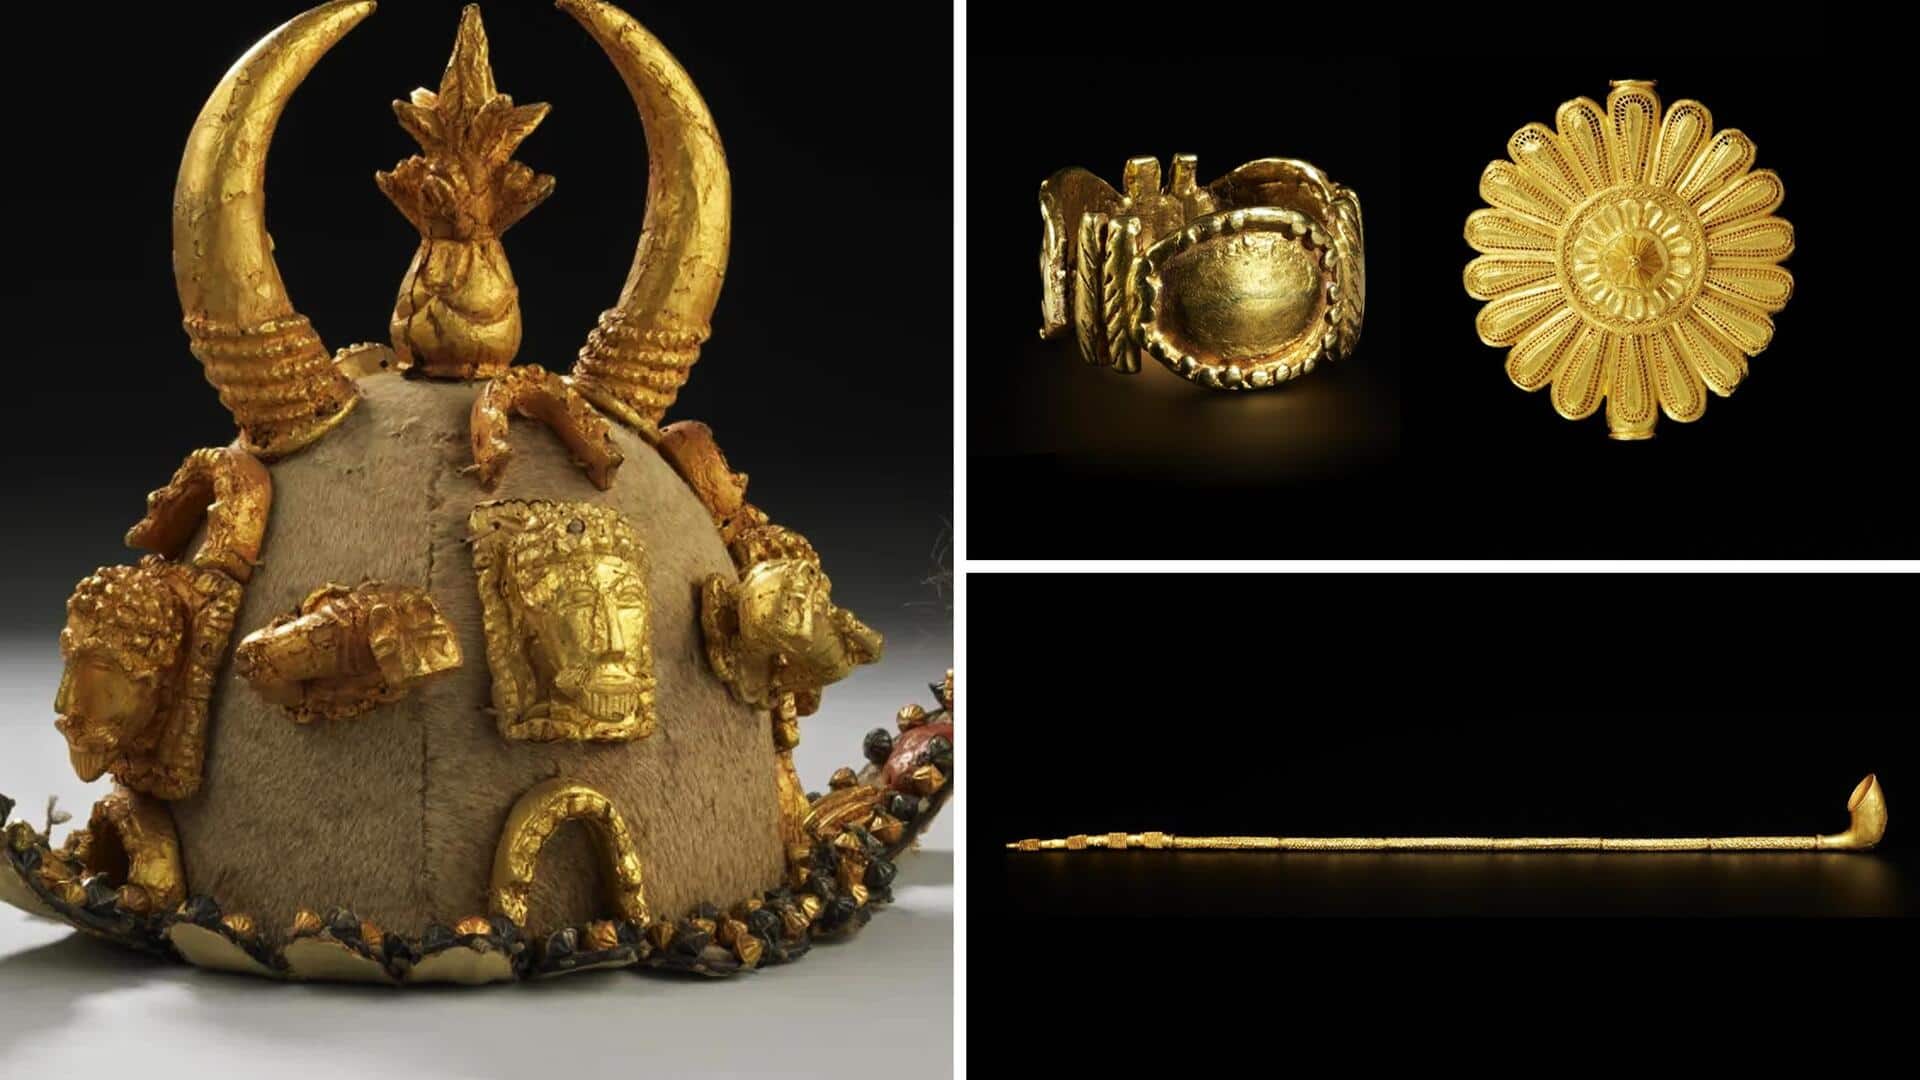 घाना से लूटी गई शाही कलाकृतियां वापस लौटाएगा ब्रिटेन, दोनों देशों में ऐतहासिक समझौता